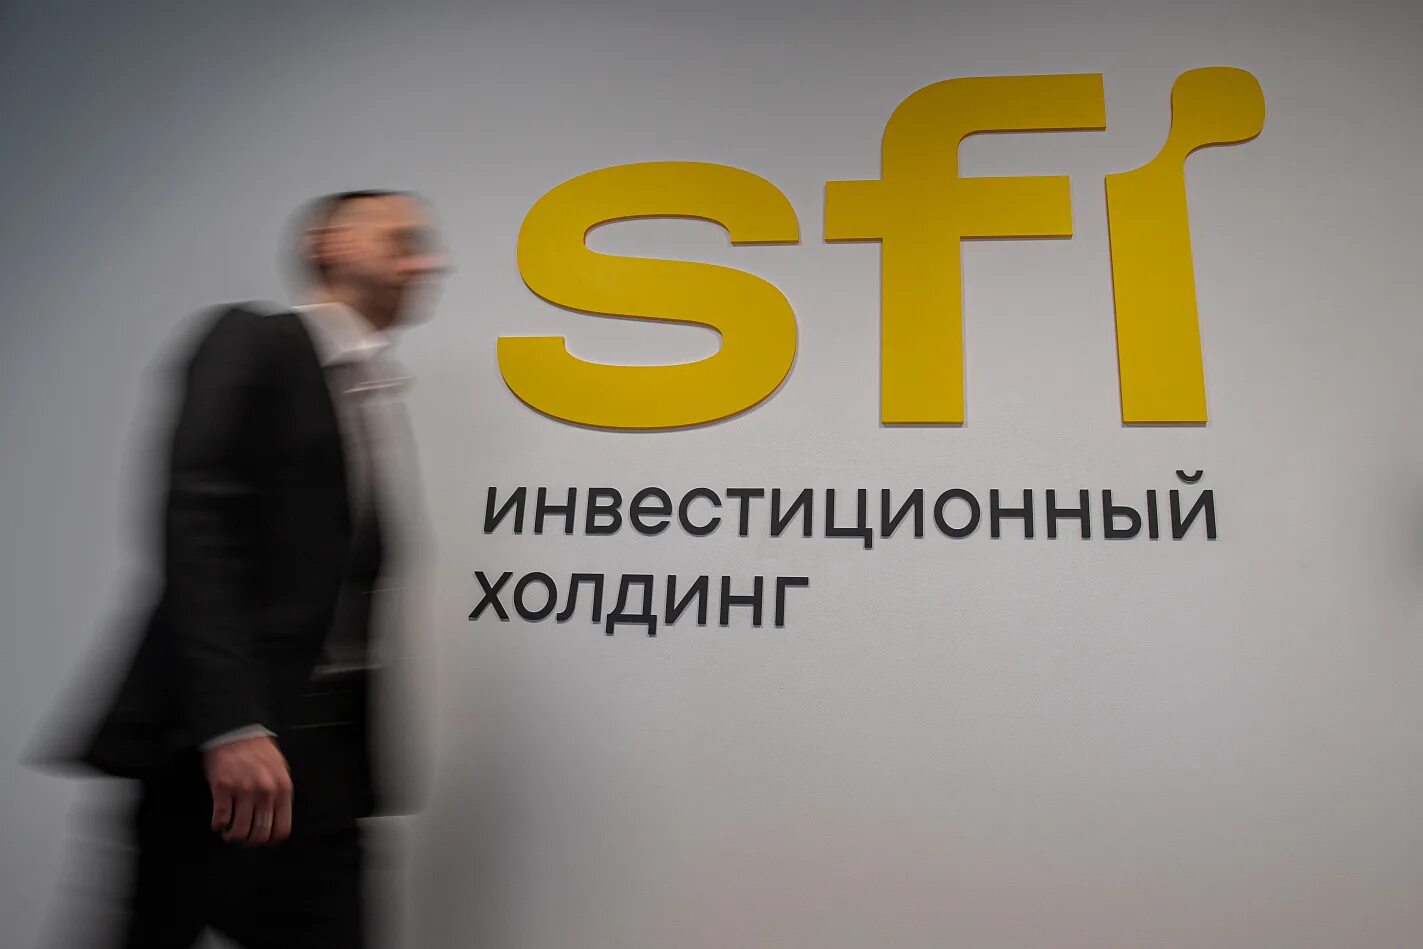 Инвестиционный Холдинг. SFI Холдинг. Инвестиционный Холдинг эсэфай. SFI инвестиционный Холдинг лого.